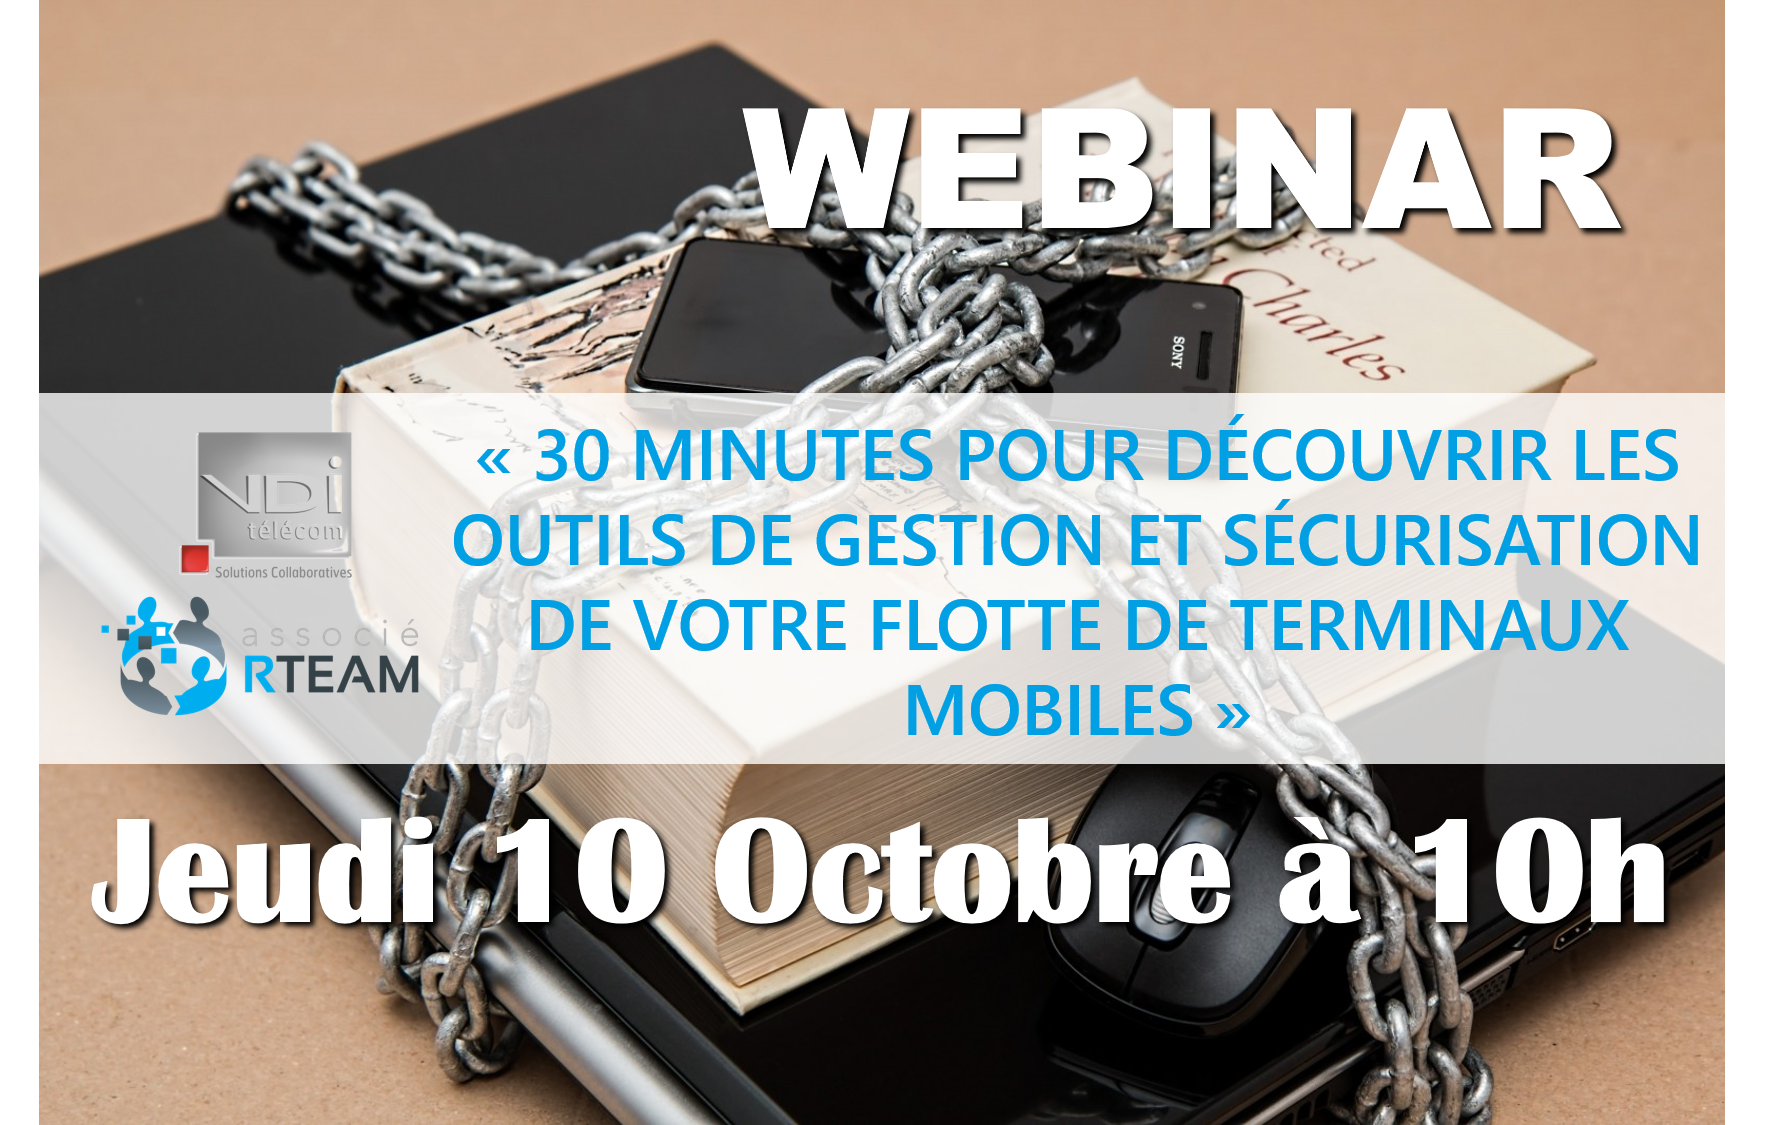 30 minutes pour découvrir les outils de gestion et sécurisation de votre flotte de terminaux mobiles